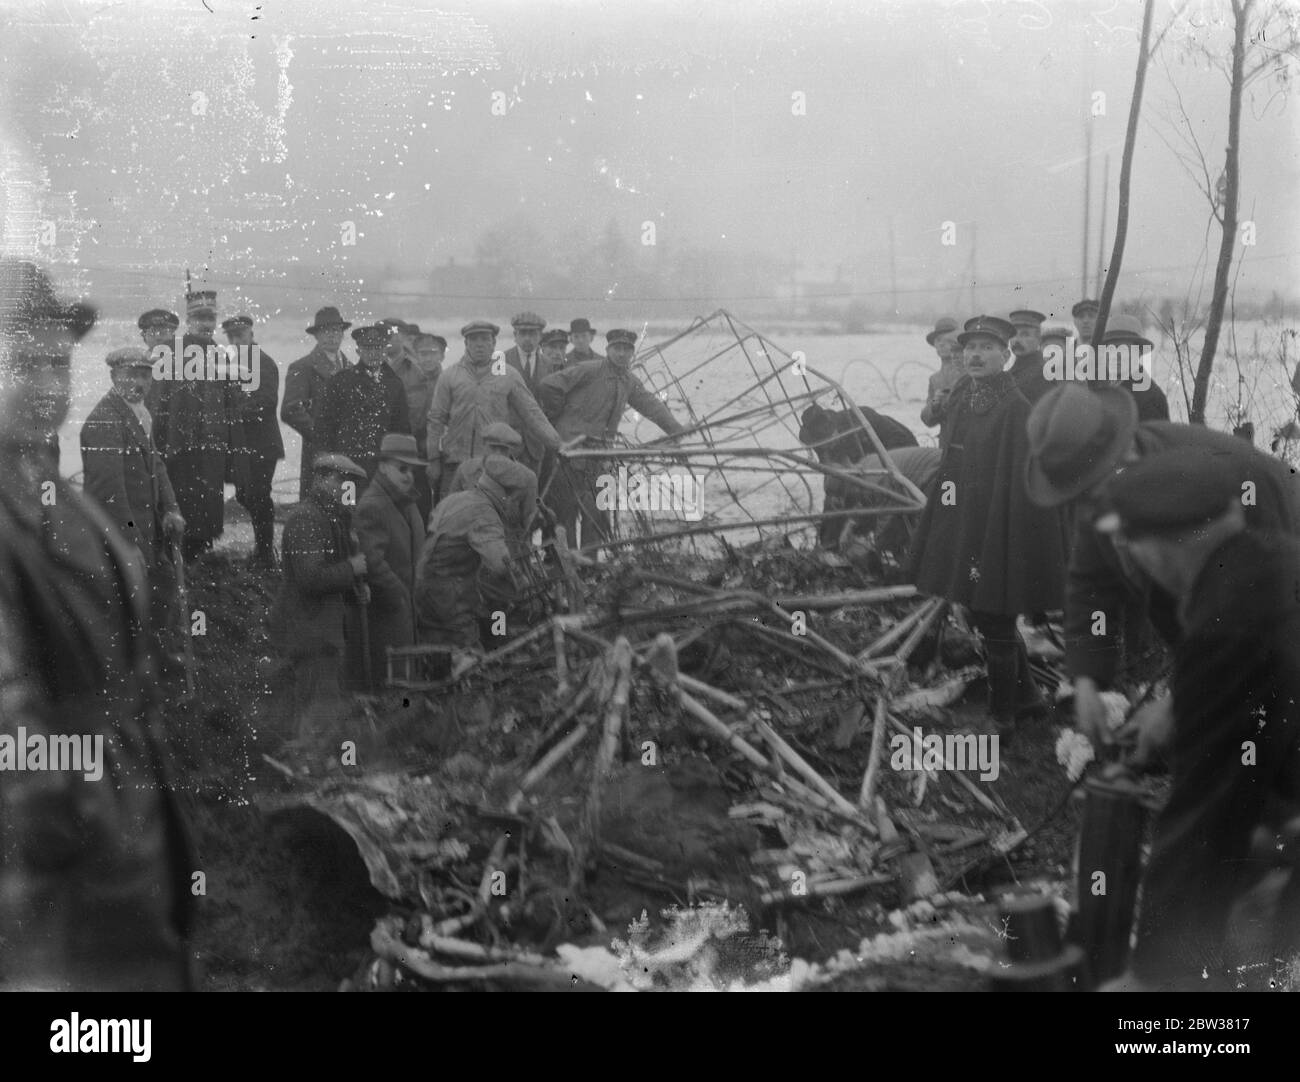 Zehn bei einem britischen Verkehrsflugzeug-Crash getötet. Acht Passagiere, der Pilot und der erste Offizier wurden getötet, als das Imperial Airways-Flugzeug, Apollo, von Brüssel nach London flog, in den Antennenmast des Ruysselde-Radiosenders in der Nähe von Brügge, Belgien stürzte und in Flammen aufbrach. Foto zeigt ; das Wrack des Flugzeugs und einer der vergrabenen Motoren nach dem Absturz . 31 Dezember 1933 Stockfoto